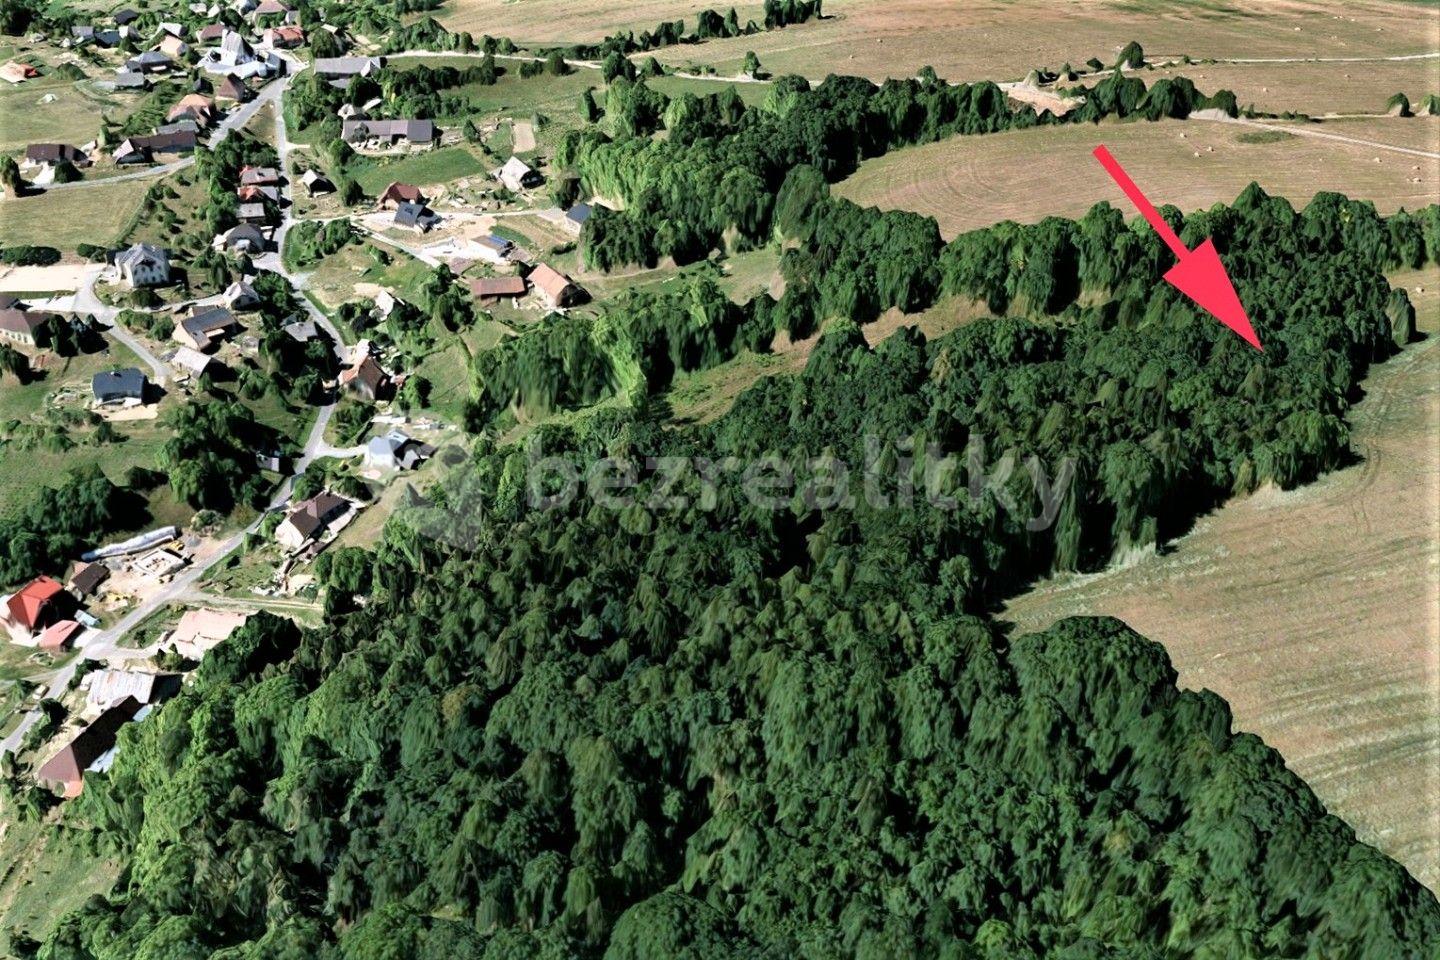 Prodej pozemku 1.864 m², Horní Studénky, Olomoucký kraj